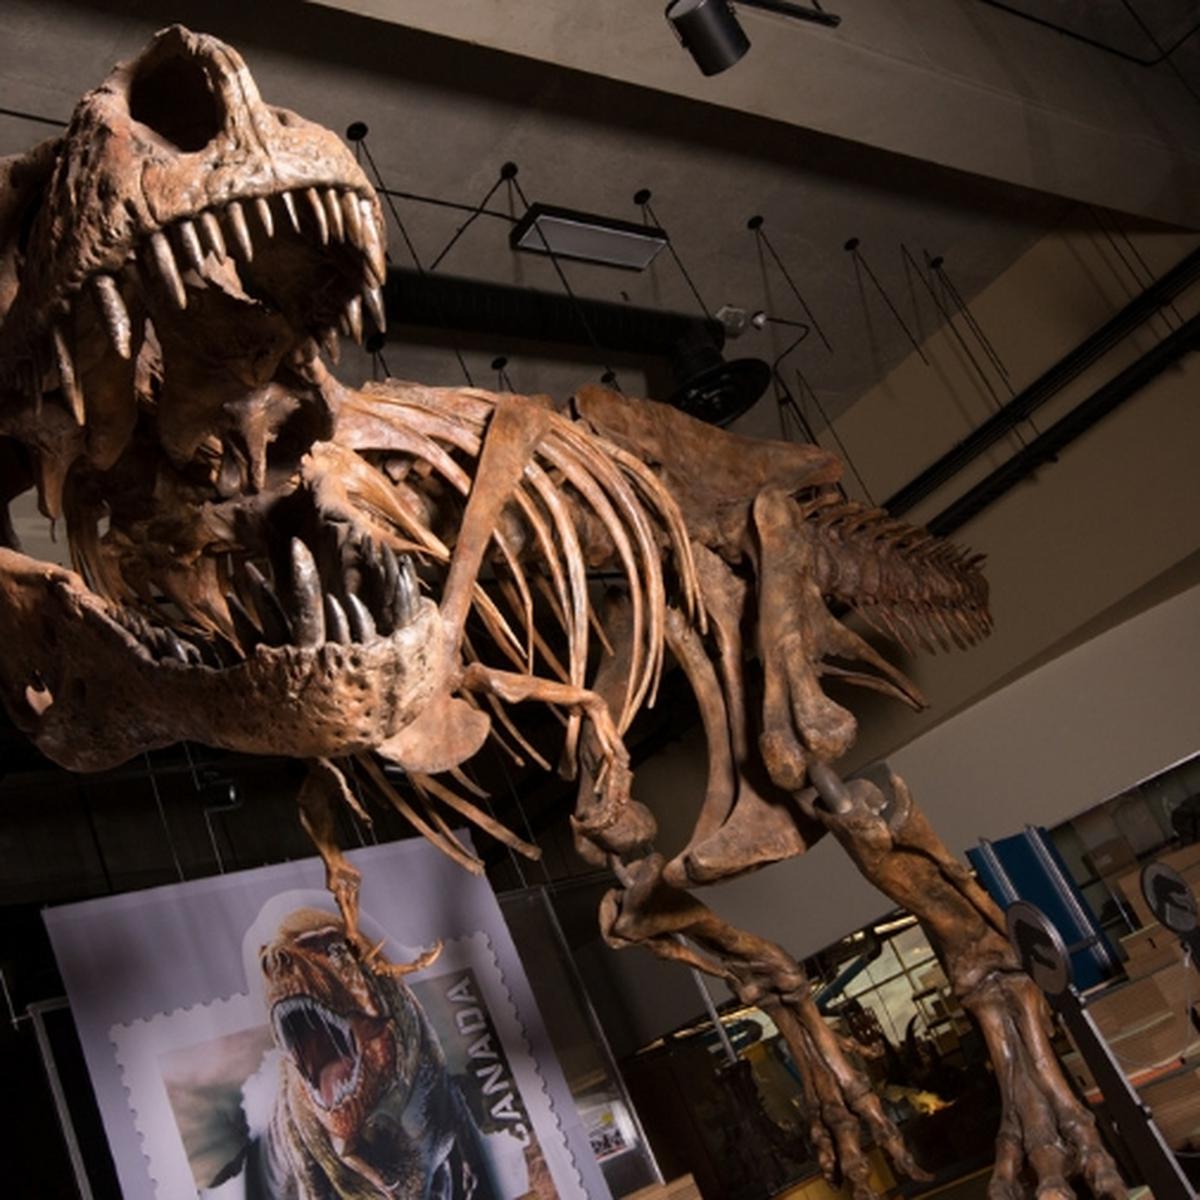 El escabroso y desagradable descubrimiento sobre el T-Rex: sus